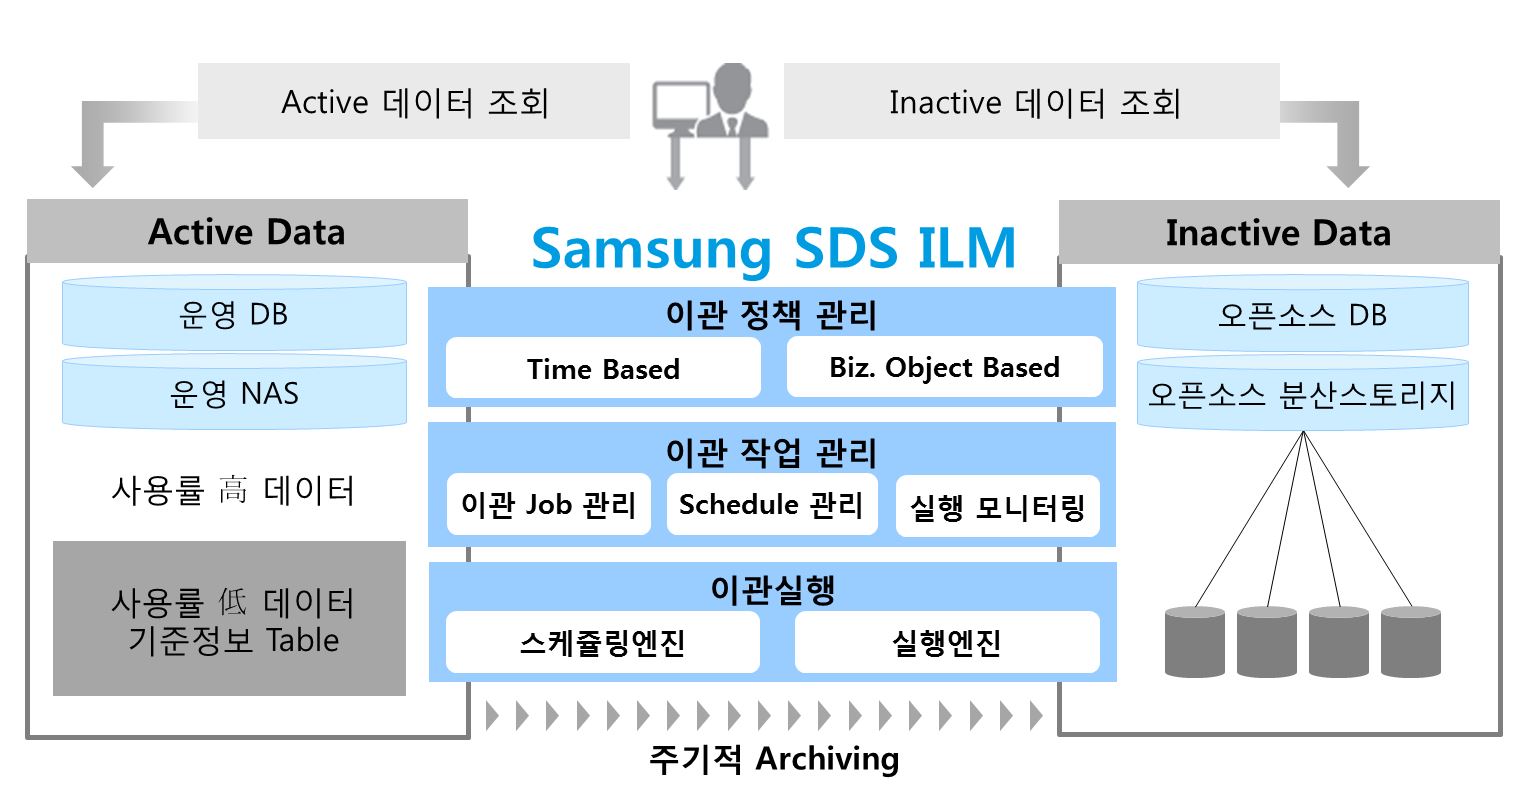 SDS가 보유한 '소프트웨어 방식'의 ILM 솔루션의 주요 기능을 설명하고 있습니다. SDS ILM은 데이터 관리 정책기반으로 아카이빙 Job/Schedule을 정의하고, 운영 데이터를 저비용 스토리지로 자동 이관해 주는 기능을 제공합니다.